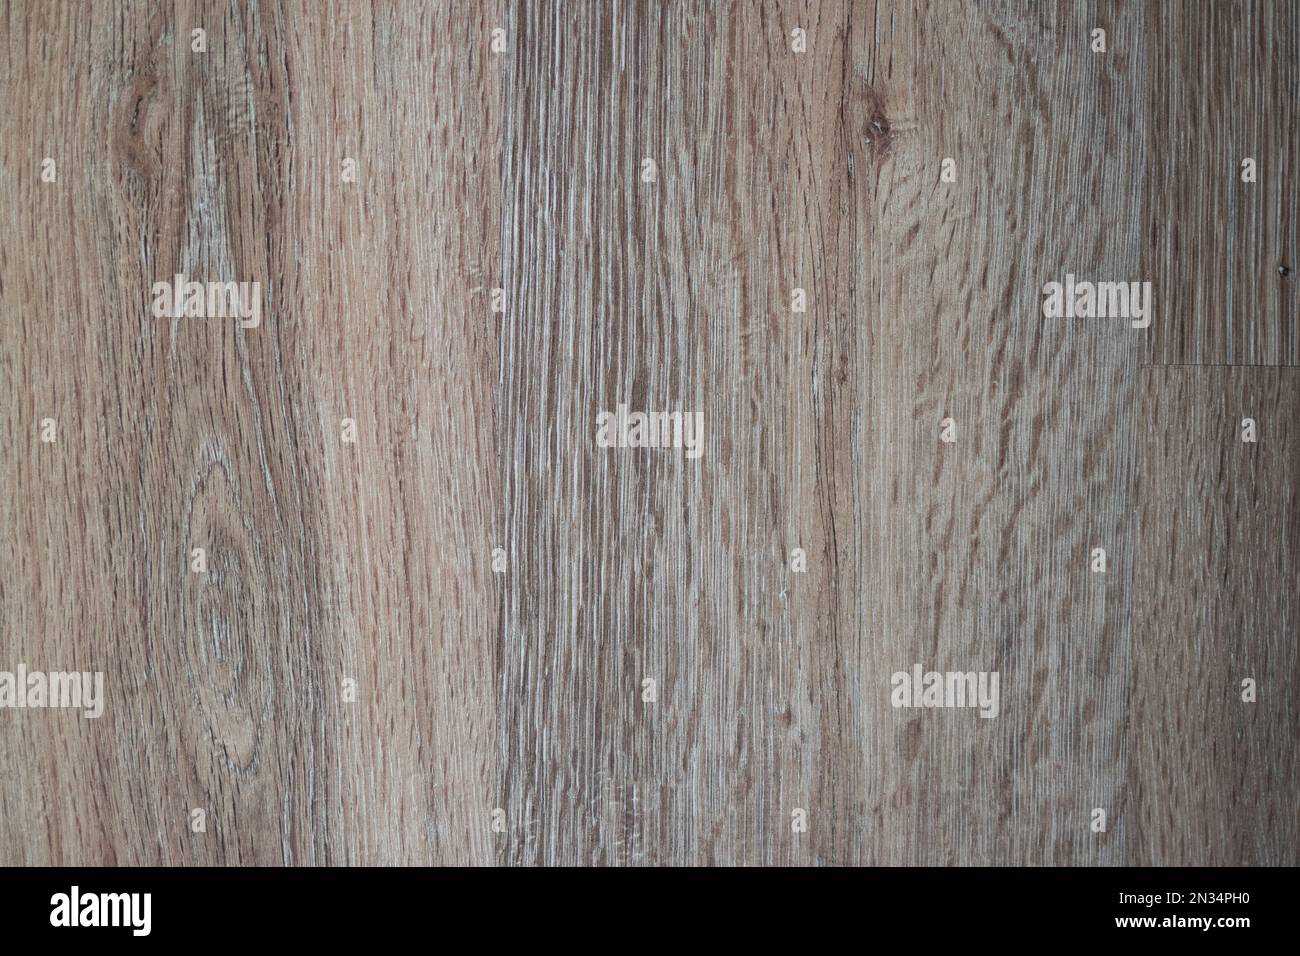 Vinyl floor in wood look Stock Photo